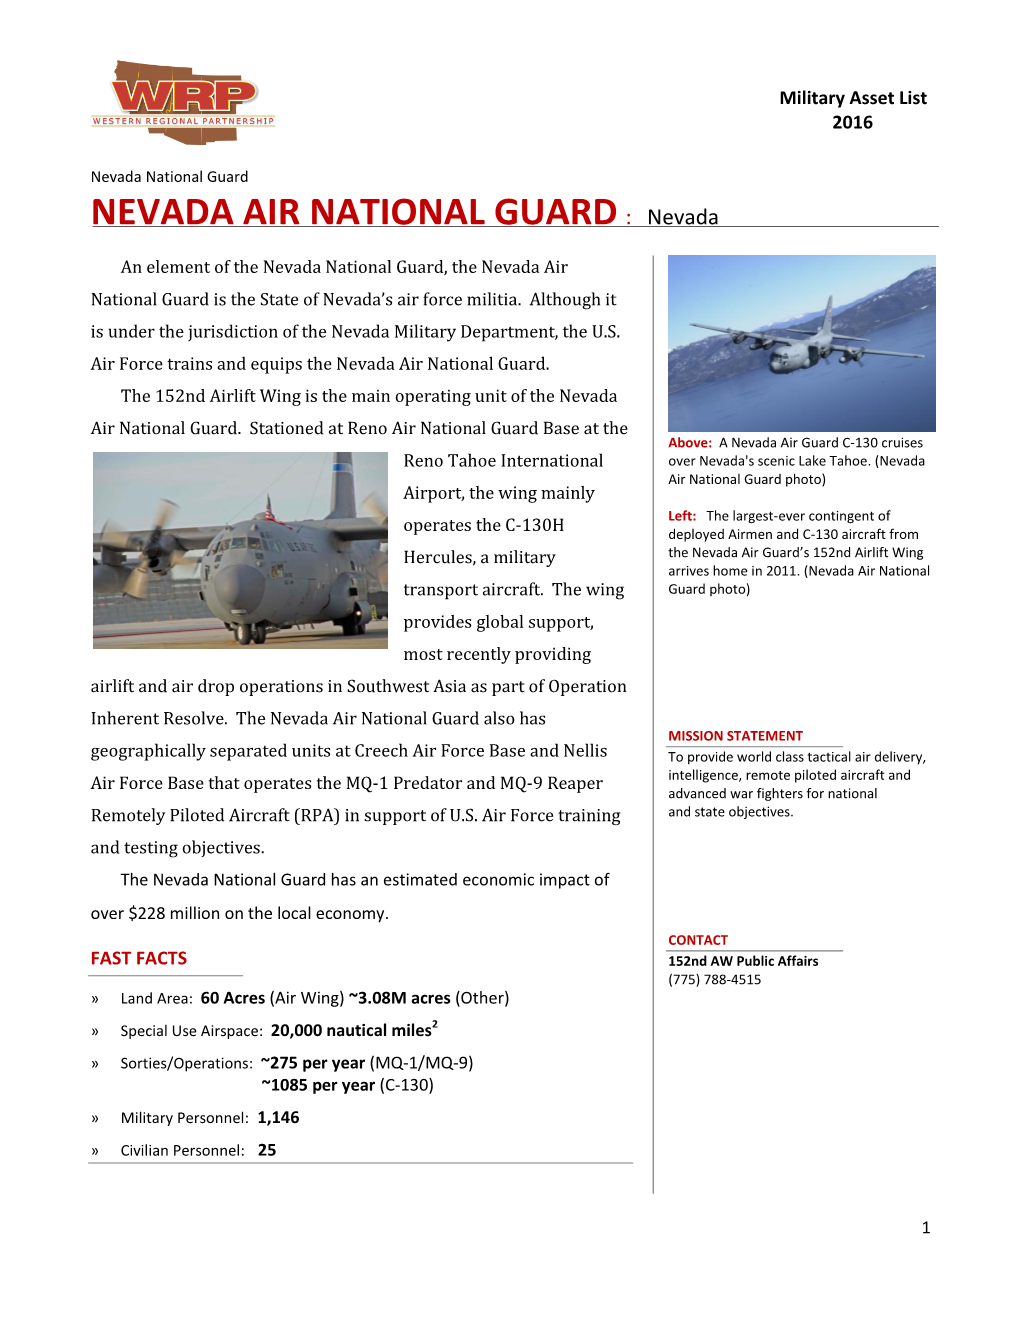 NEVADA AIR NATIONAL GUARD : Nevada